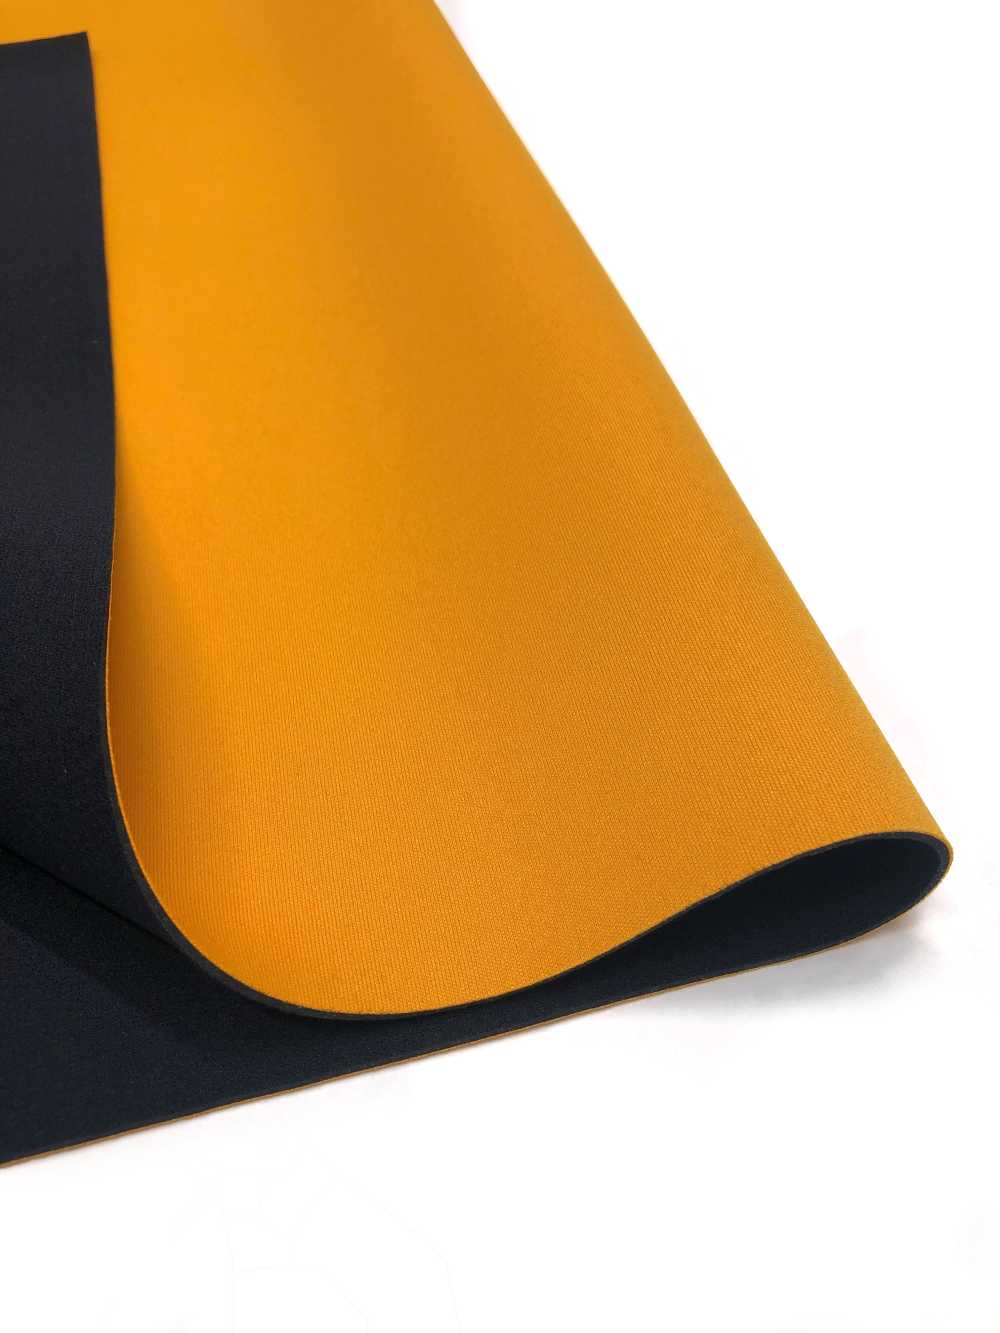 31041 HM AL Arancione/PS Nero 95 × 170 Cm[Tessile / Tessuto] Tartaruga